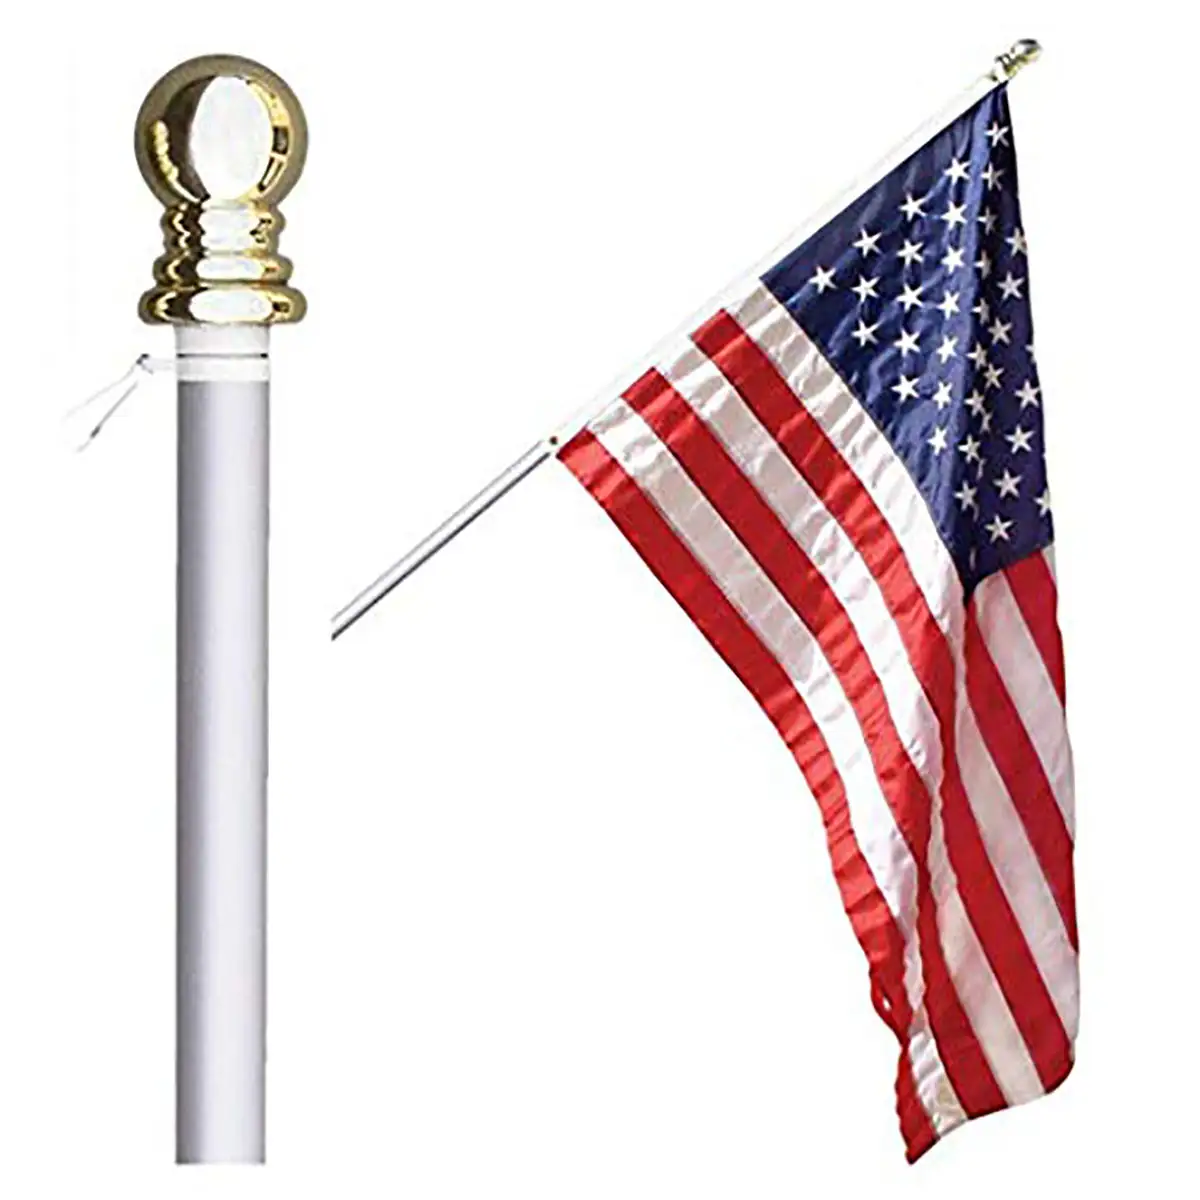 Yüksek kaliteli dolaşmayan iplik bayrak direği alüminyum gümüş renk bayrak direği braketi güvenli montaj bayrak direği